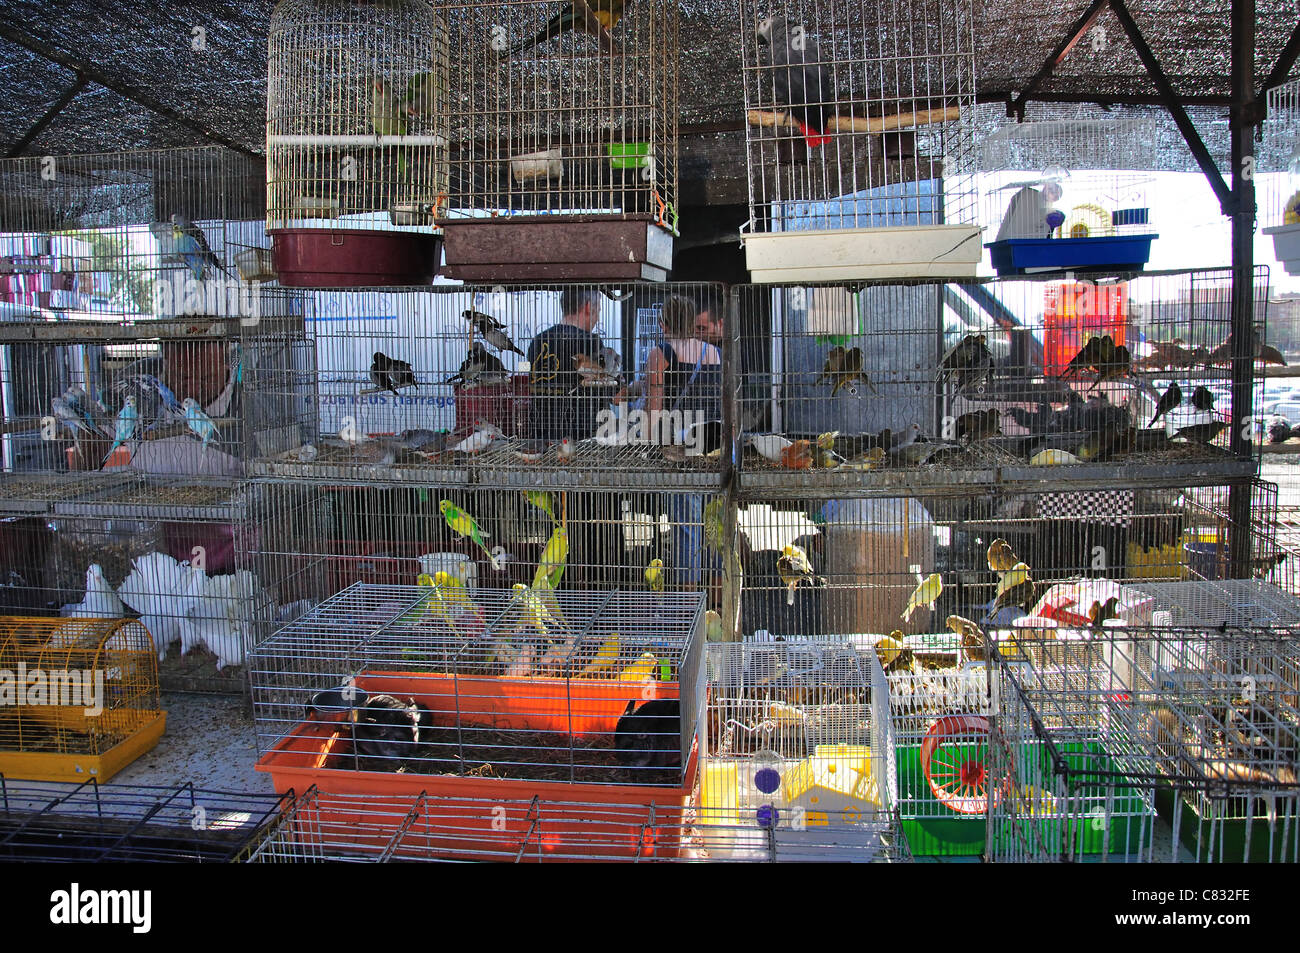 Blocage d'oiseaux à Bonavista Marché Dimanche, Bonavista, près de Salou, Costa Dorada, province de Tarragone, Catalogne, Espagne Banque D'Images